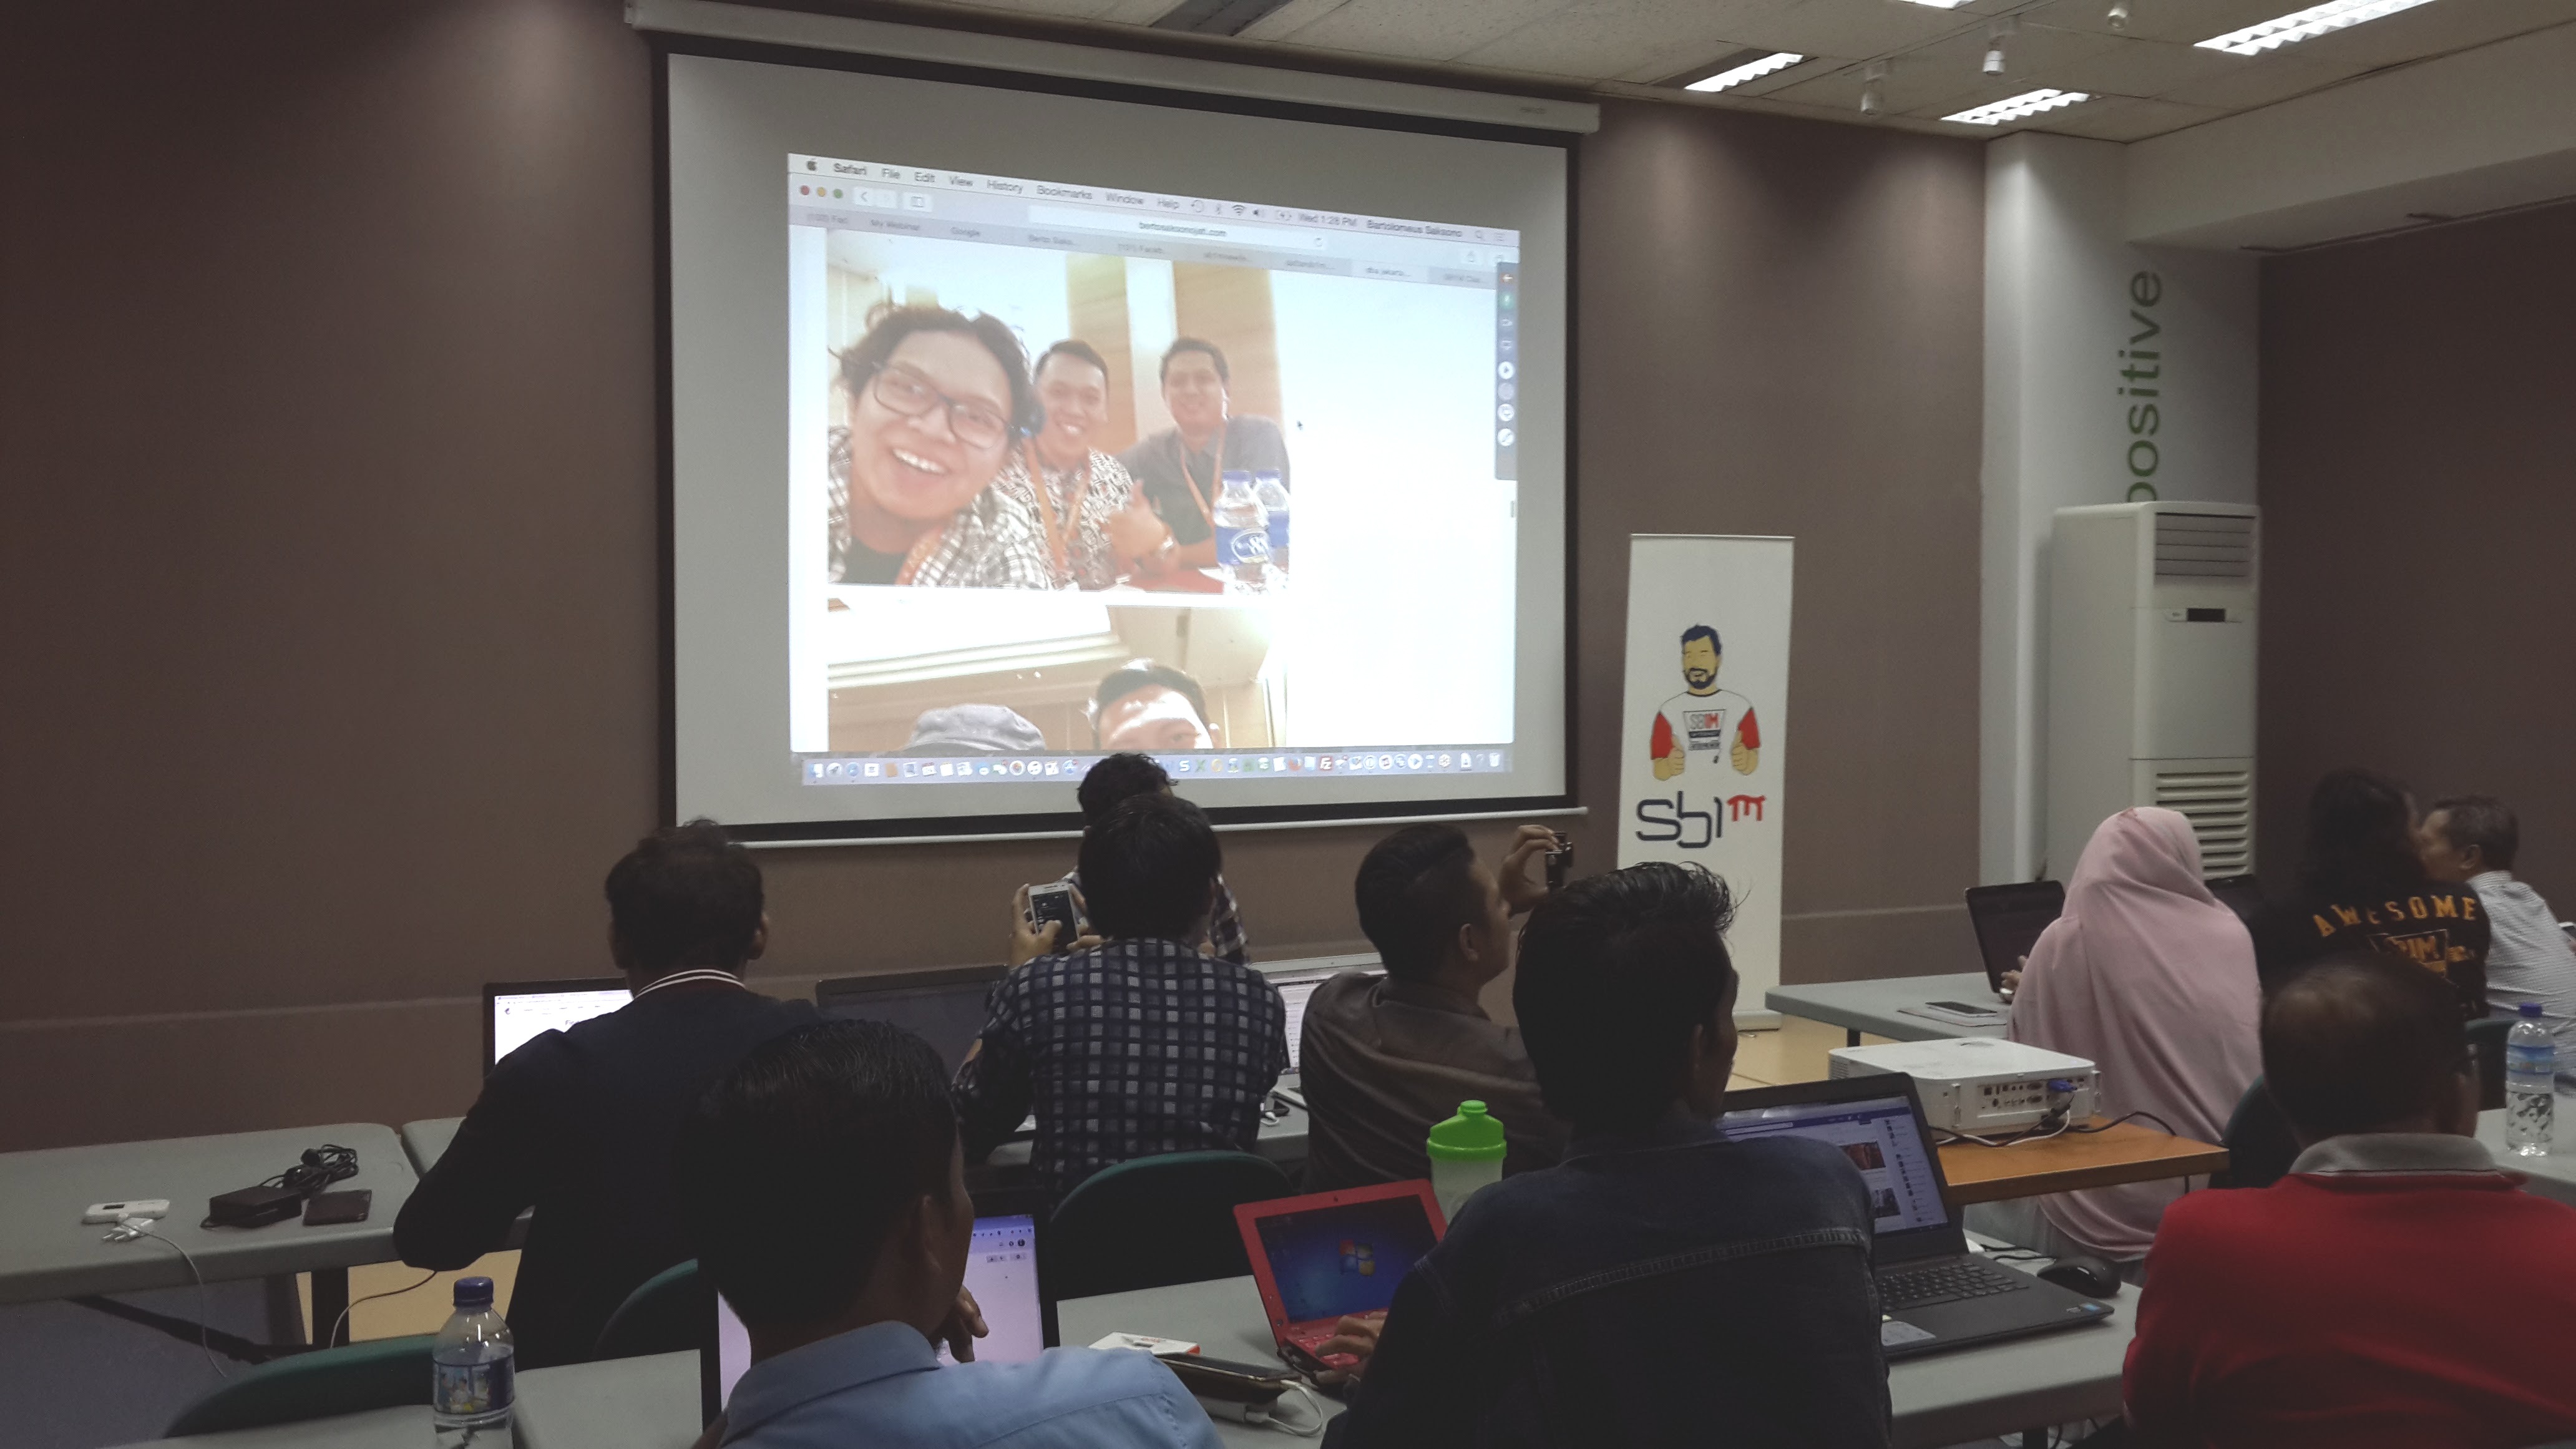 Pendaftaran Kursus Belajar Bisnis Online Dan Internet Marketing Komunitas SB1M Di Jakarta